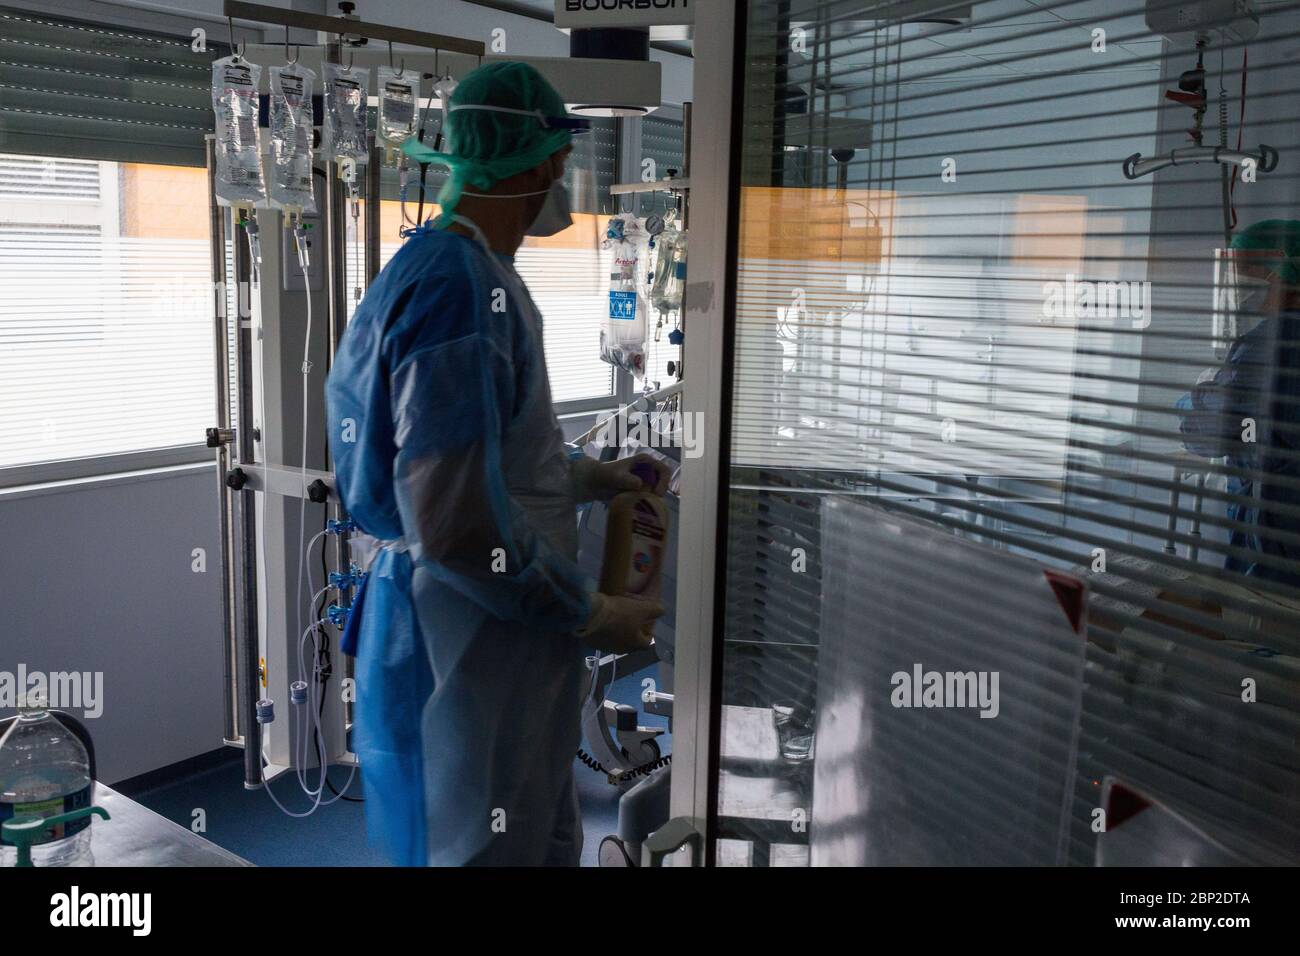 Terapia intensiva, pazienti affetti da Covid 19, ospedale di Bordeaux, Francia. Foto Stock